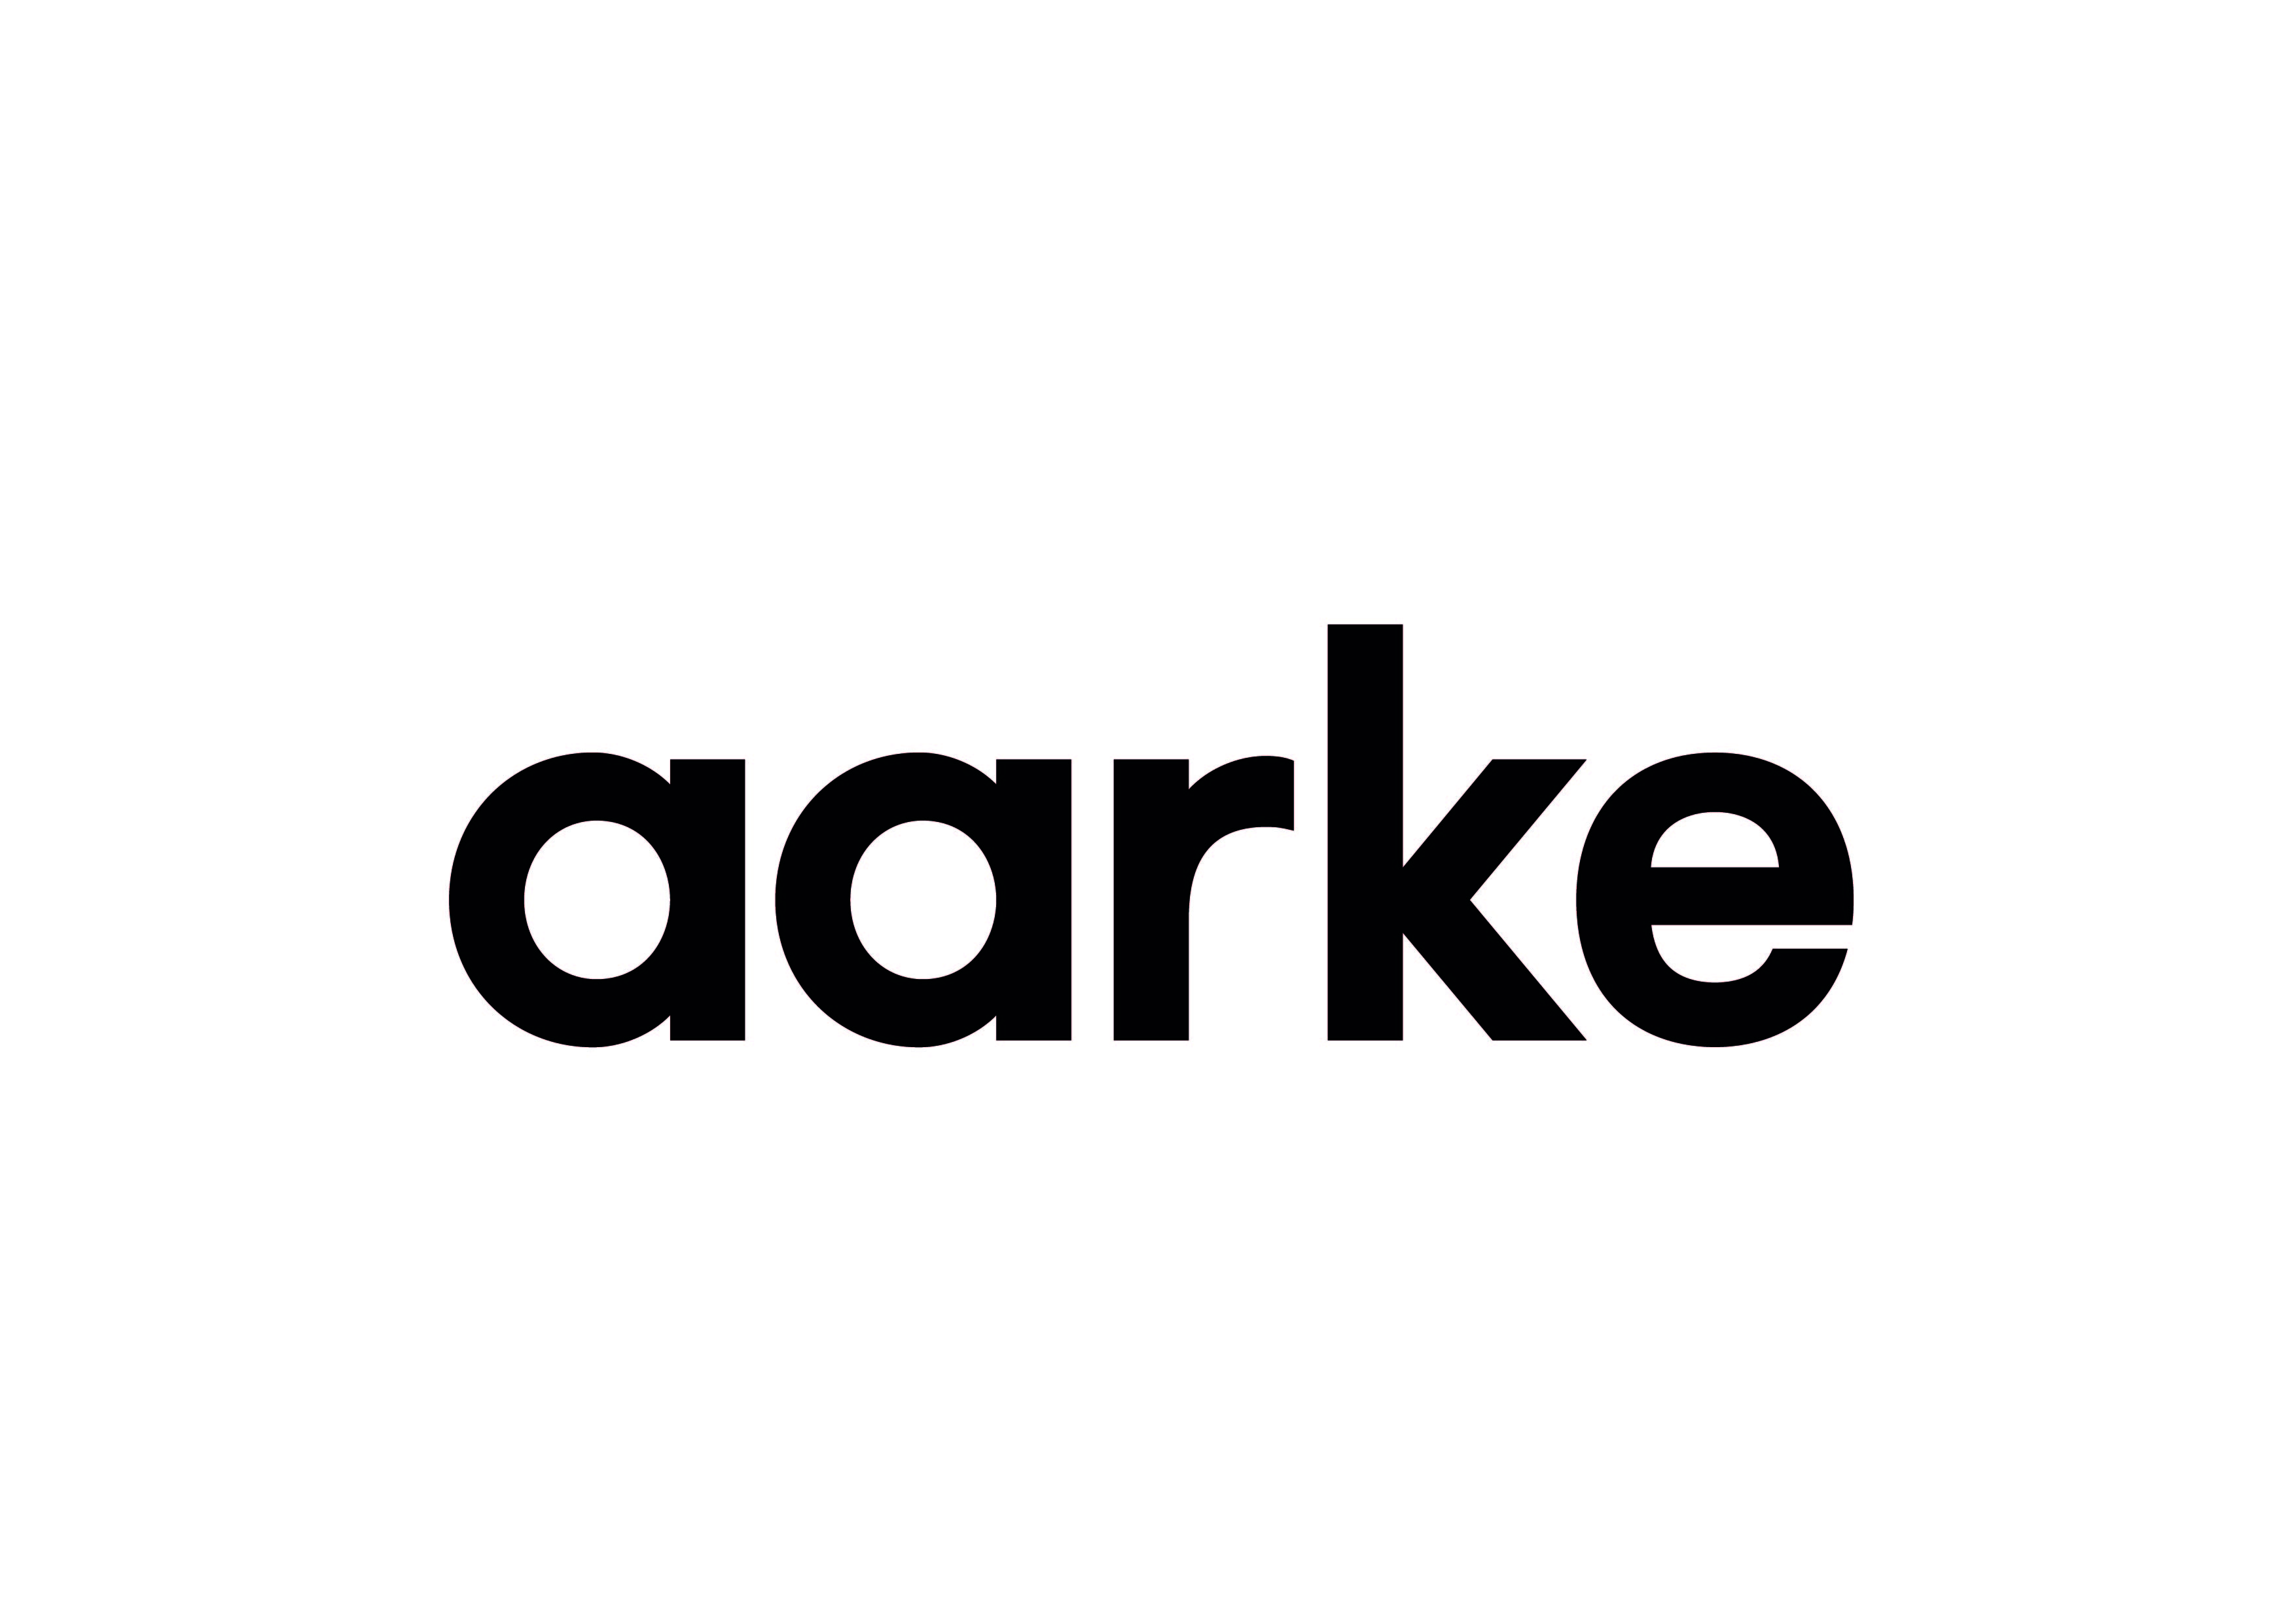 Aarke Carbonator Pro logo